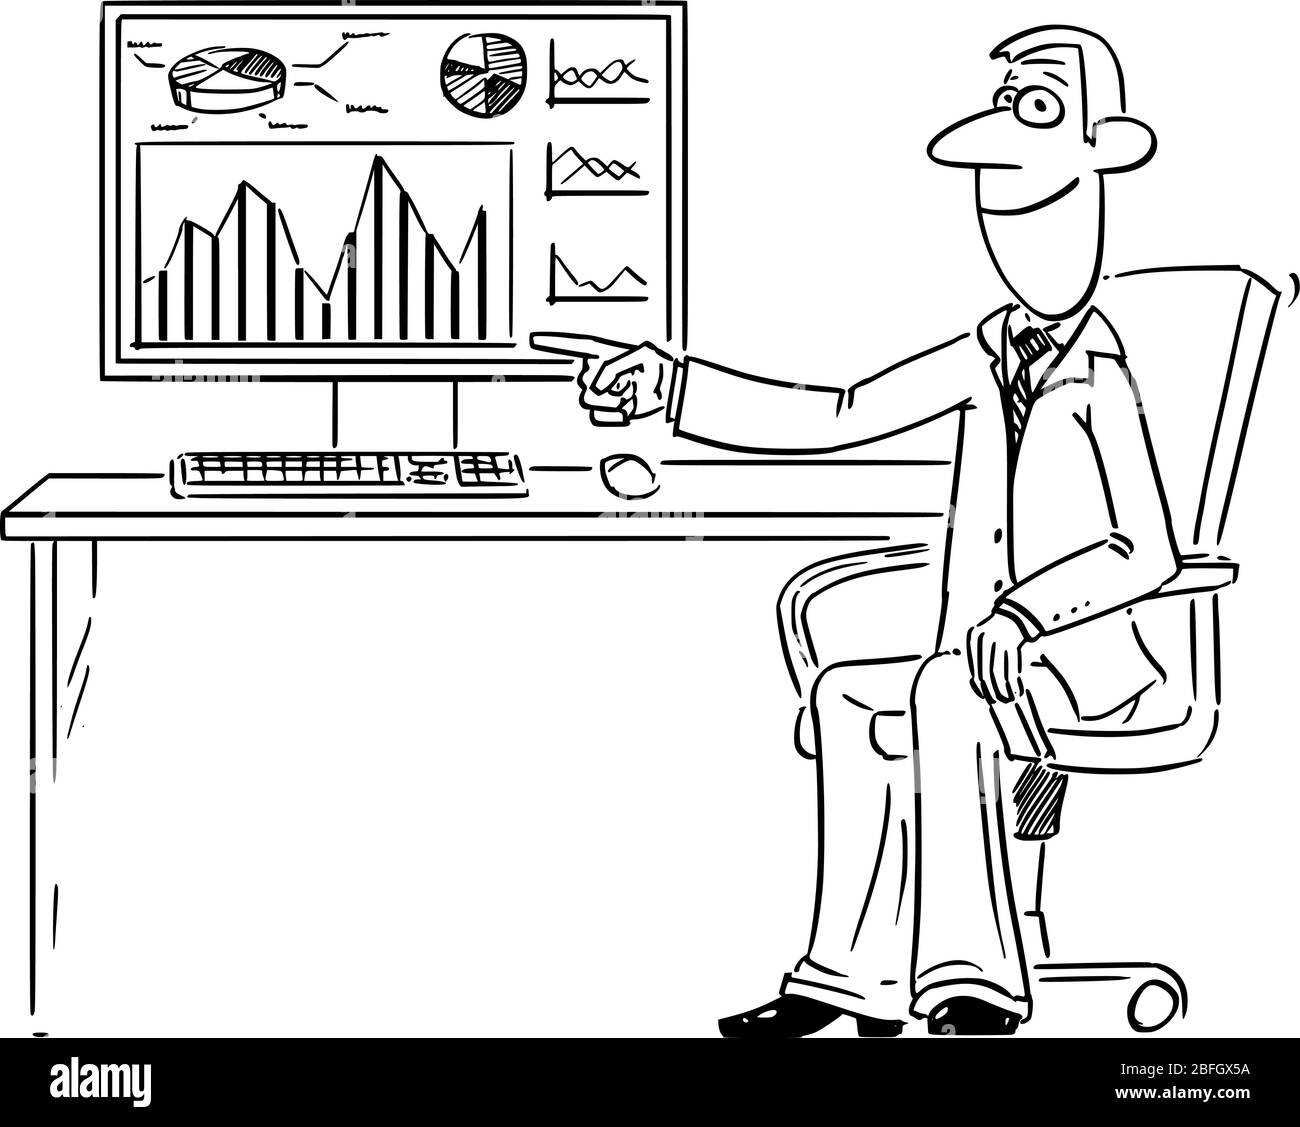 Vettore divertente fumetto disegno di uomo d'affari o uomo che lavora in ufficio sul computer e che punta a grafico finanziario, diagramma o grafico sul display o schermo. Illustrazione Vettoriale